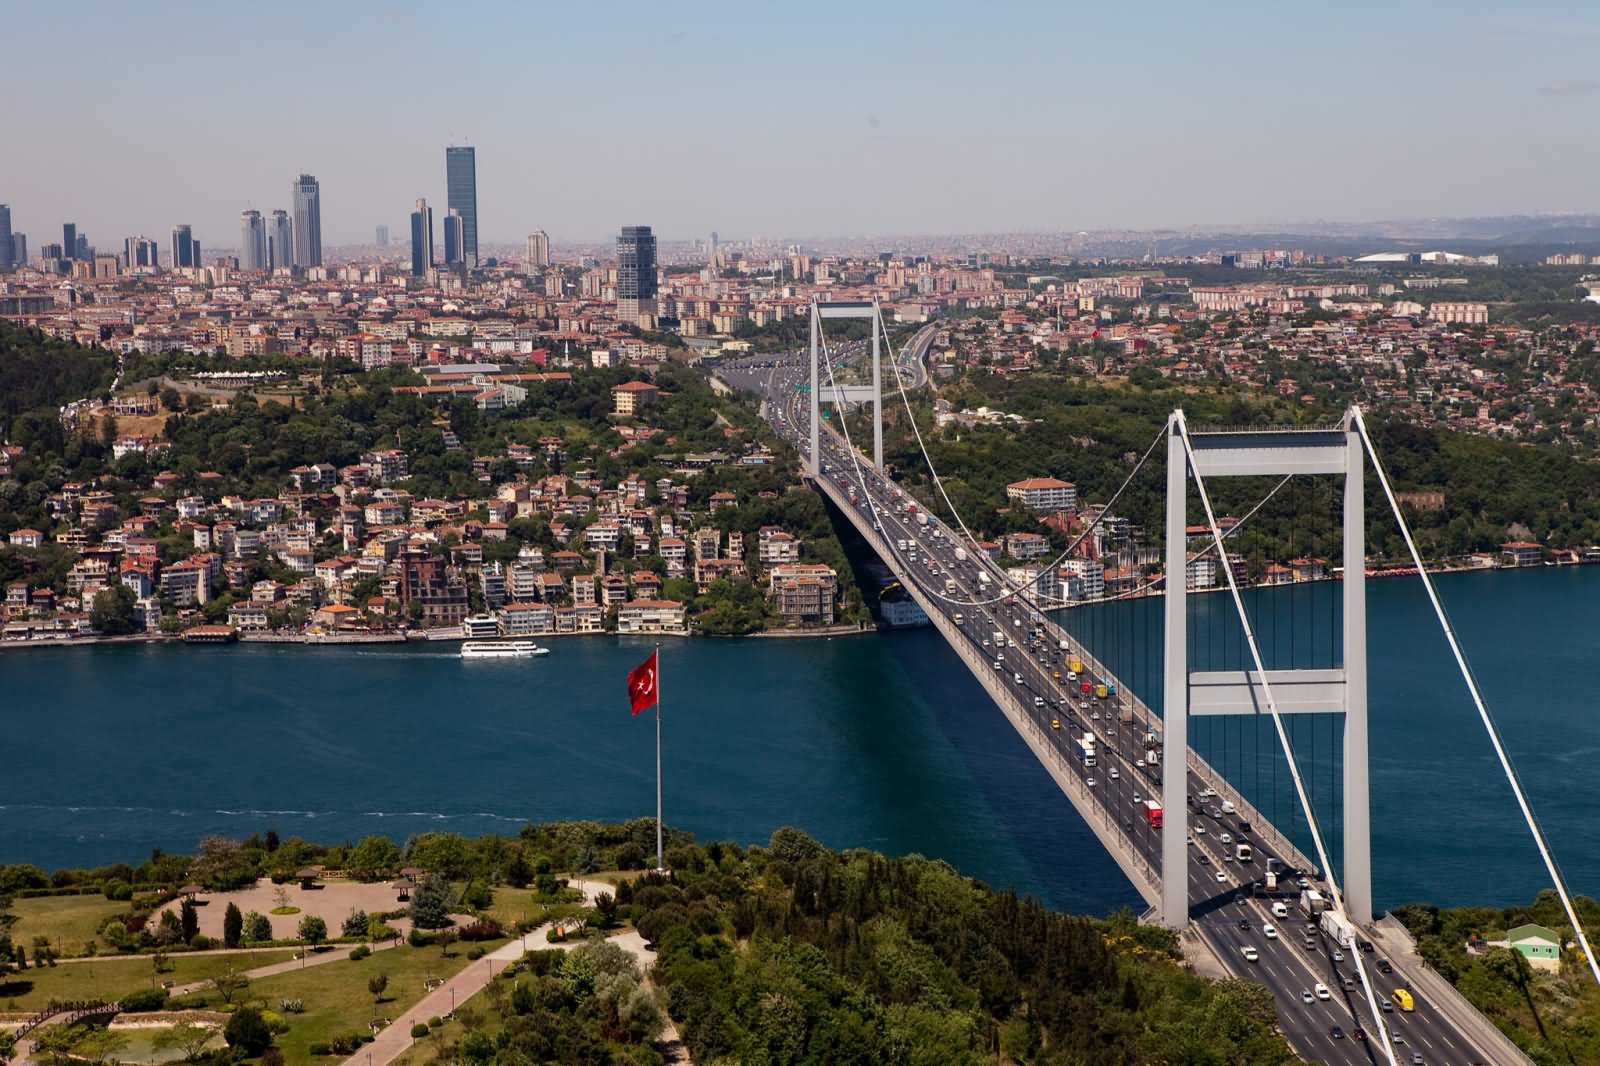 The Bosphorus Bridge Picture